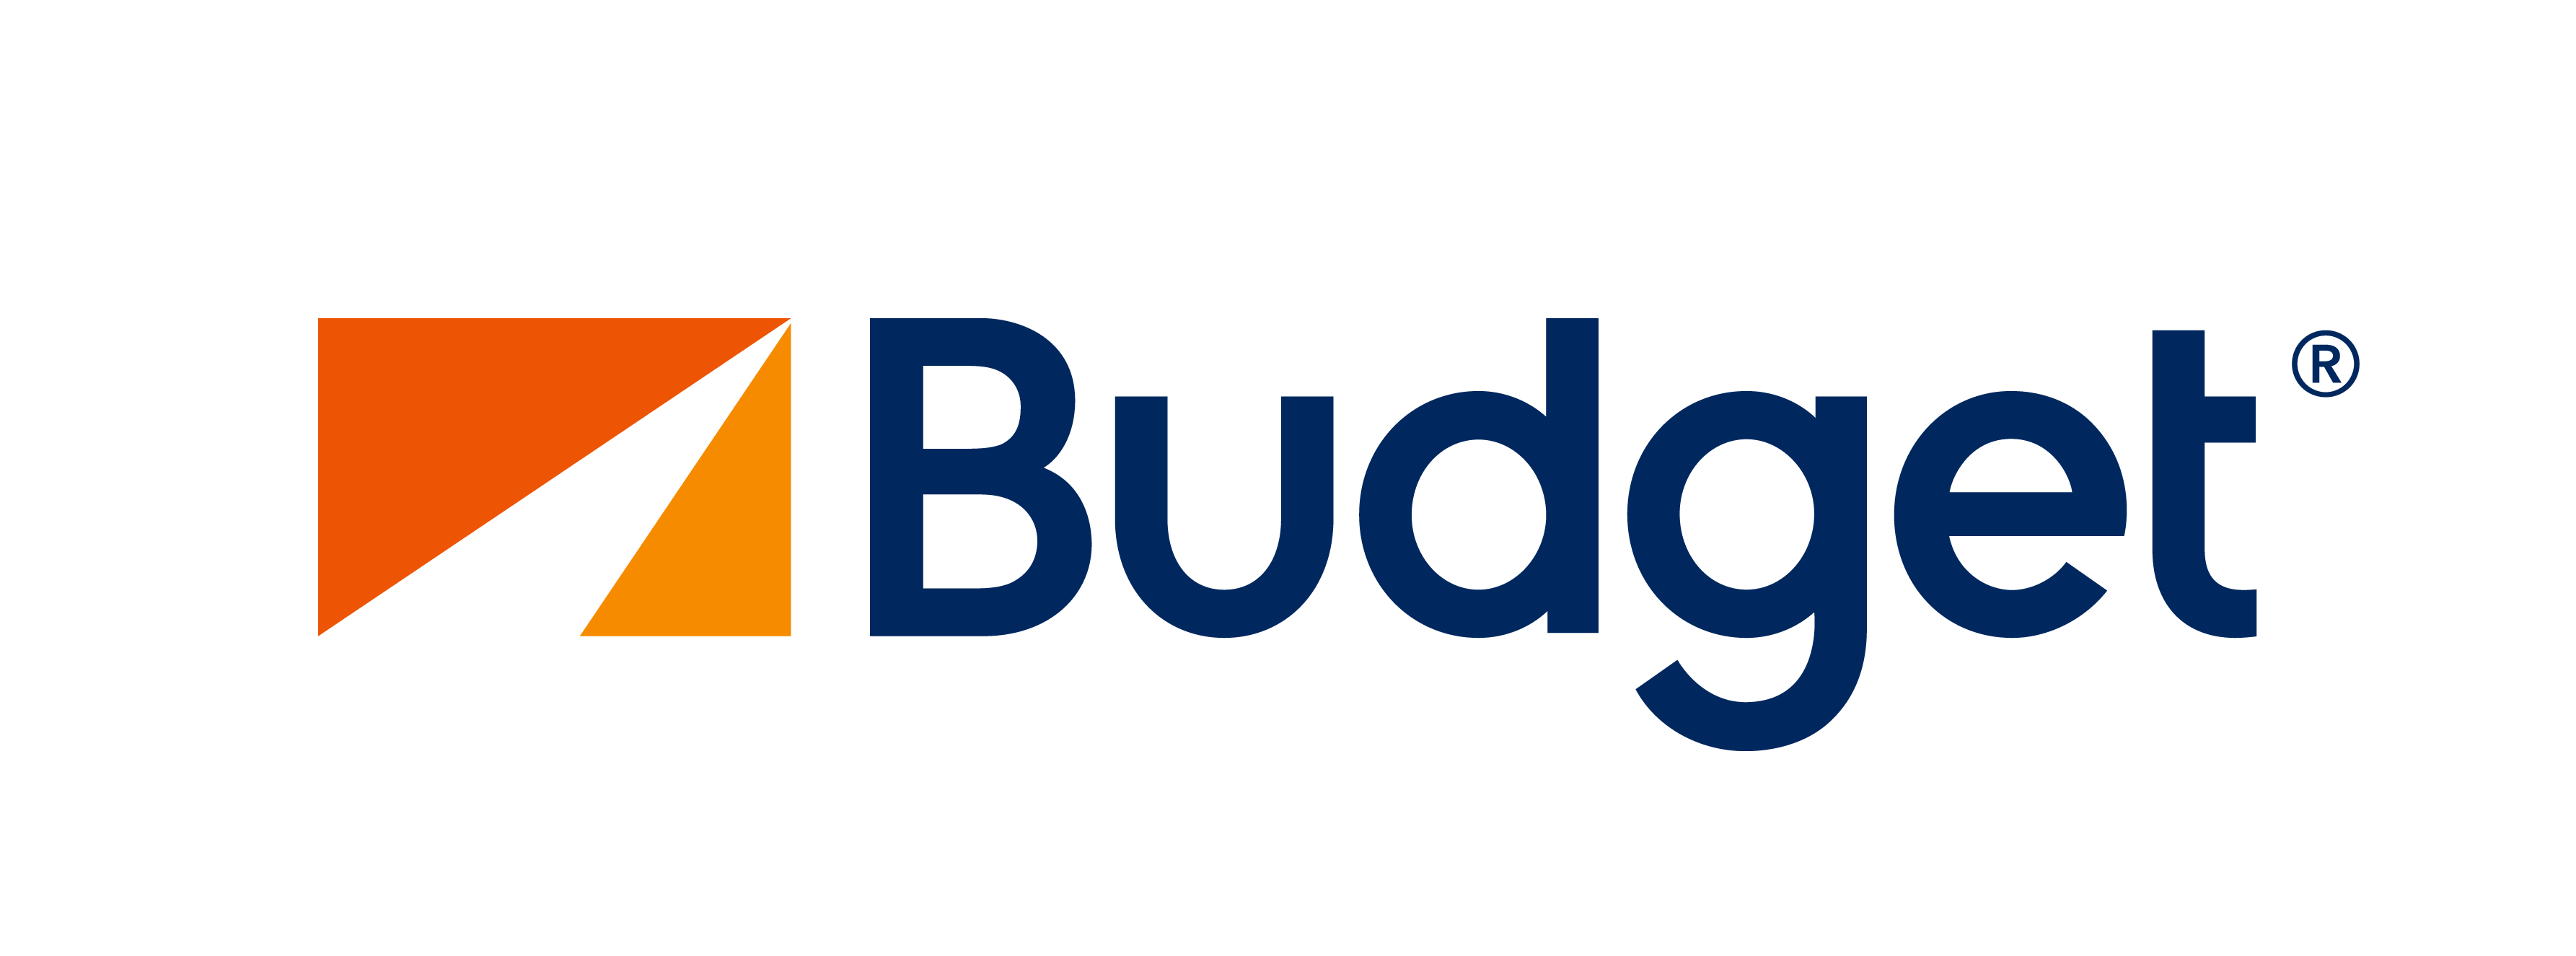 Budget Logo - Budget Logo transparent PNG